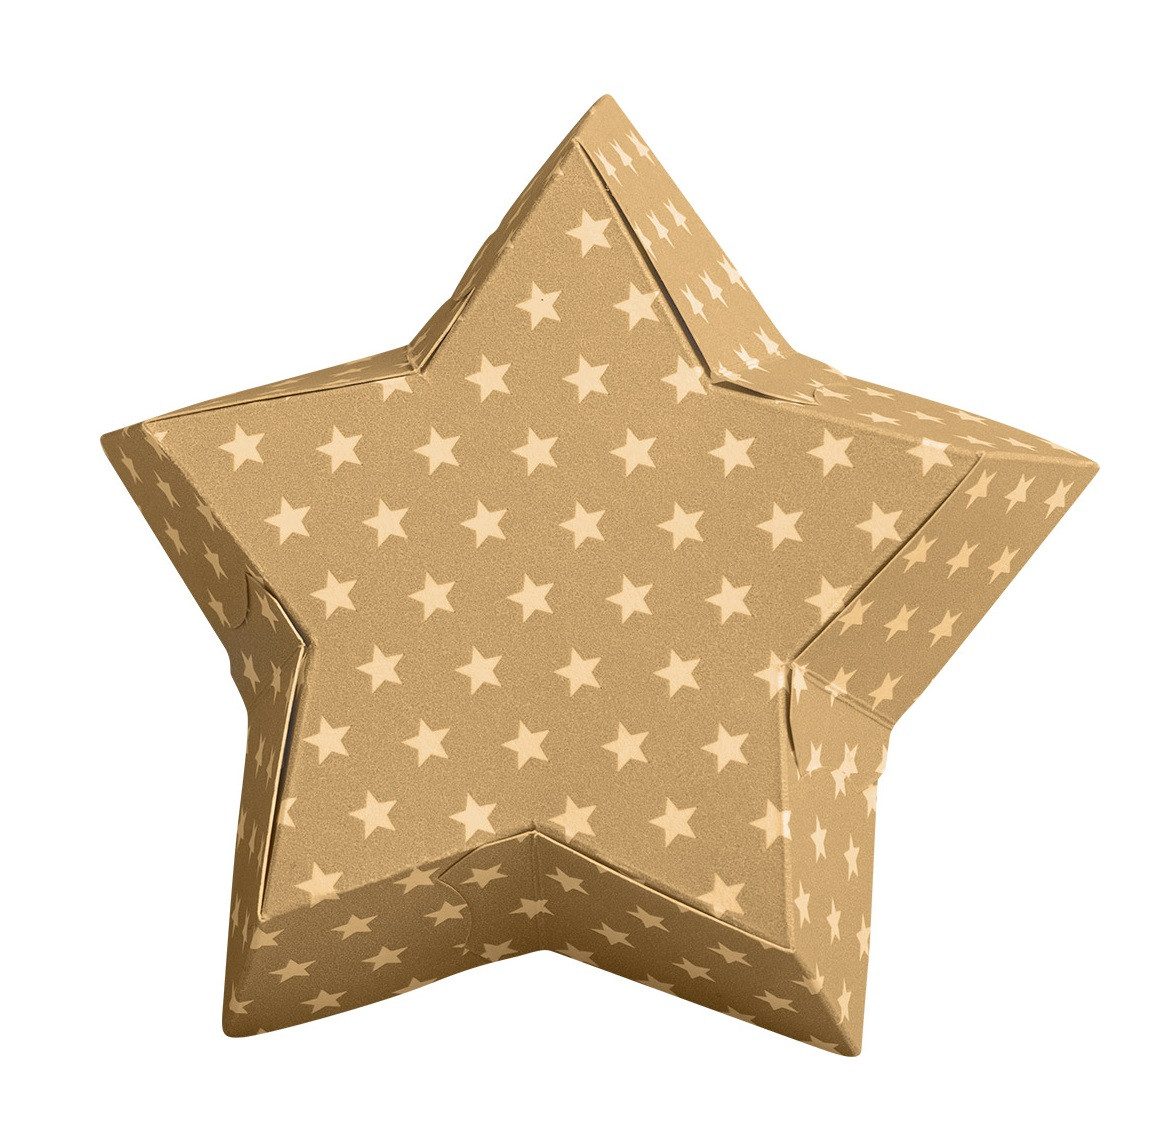 Demmler Backform 7049391010, Sternenform - Gold mit weißen Sternen -, zum Backen und Verzieren von Dessert - Made in Germany